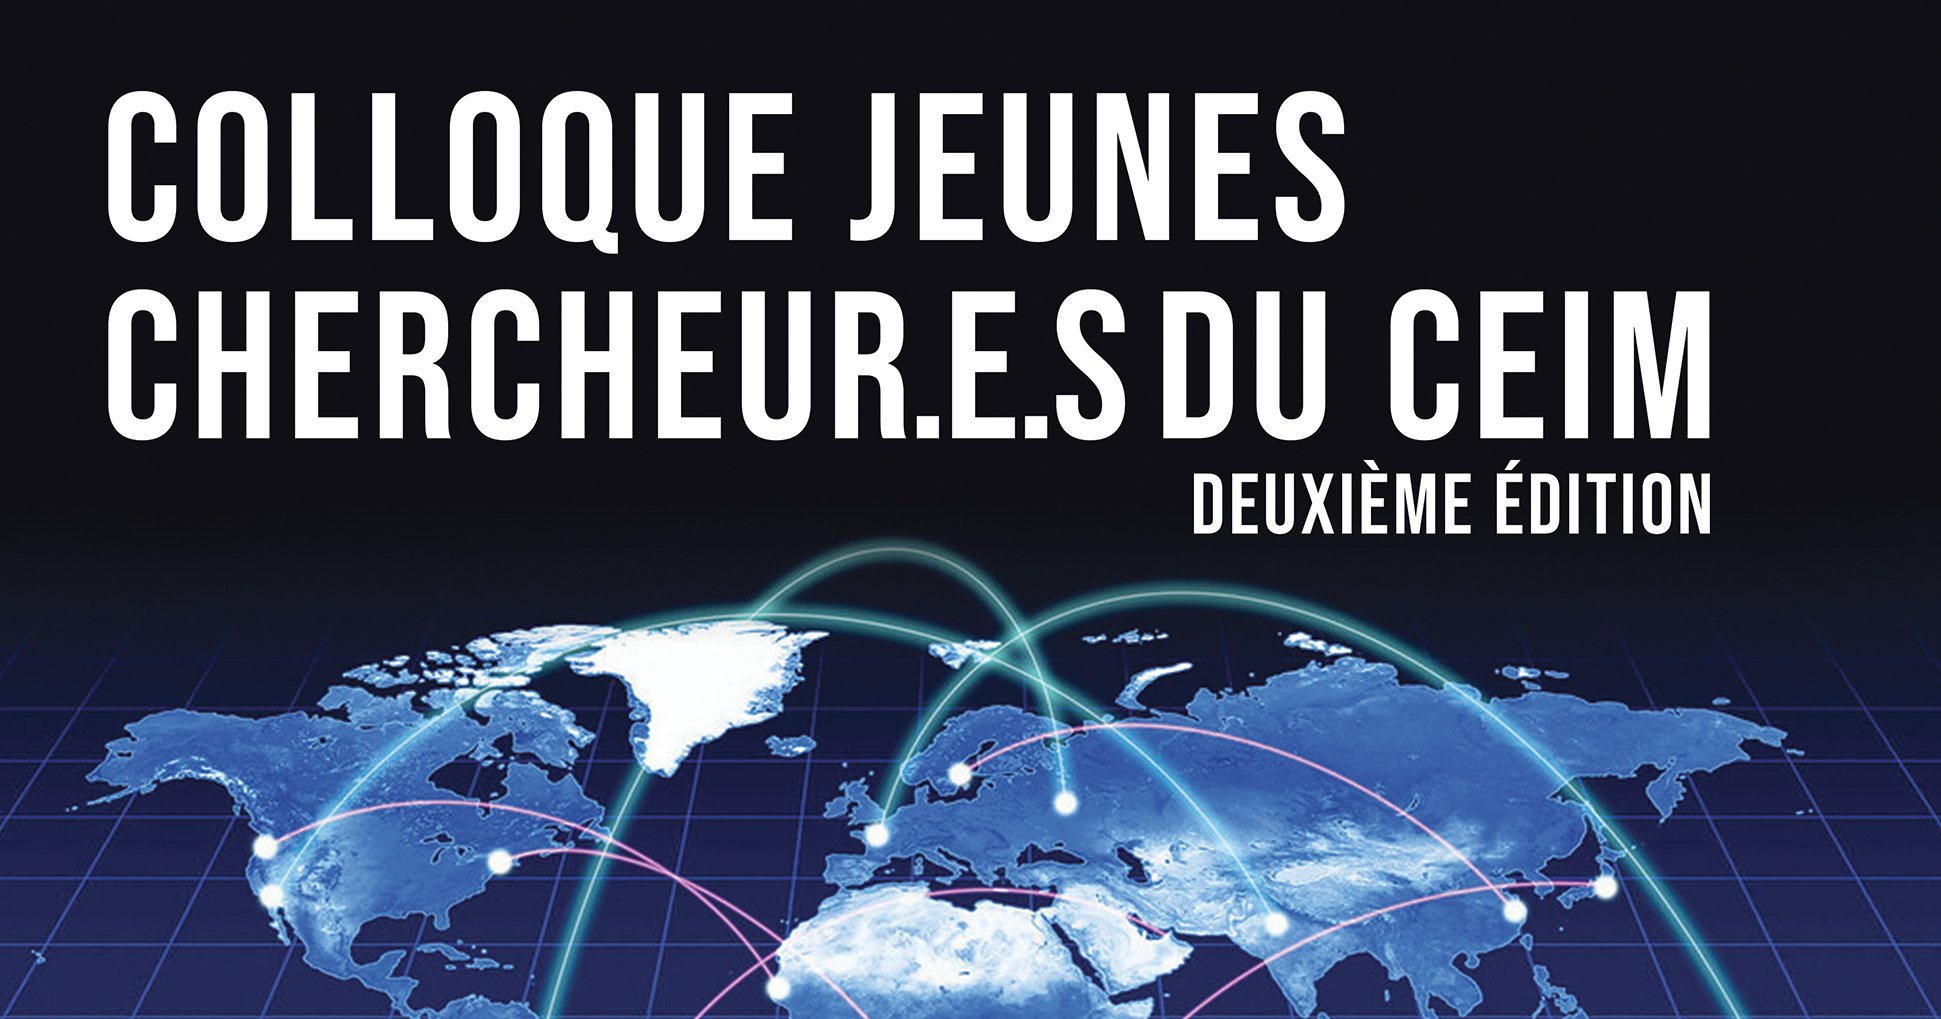 Colloque Jeunes Chercheur.e.s du CEIM - 2e édition